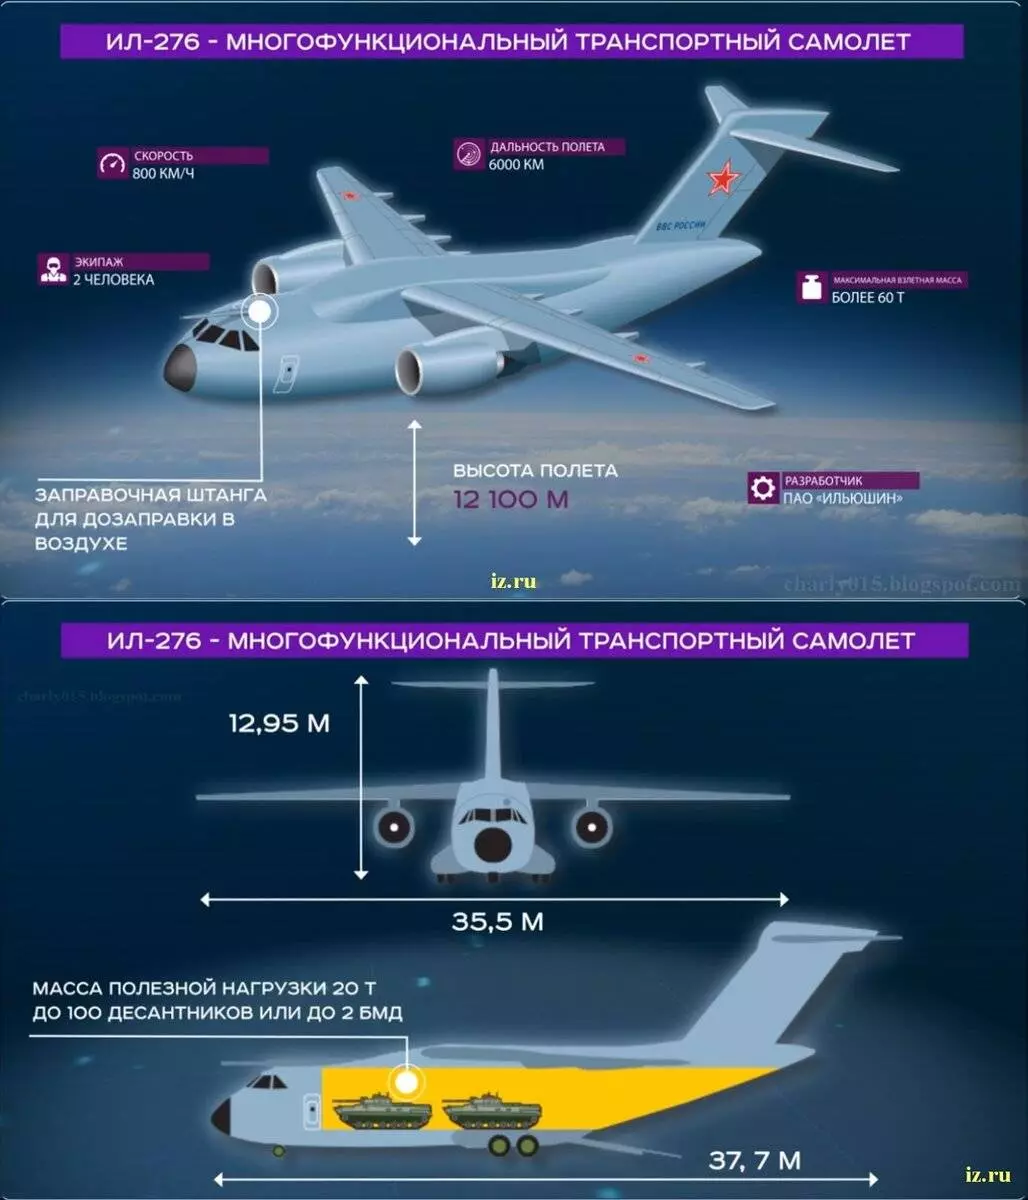 Ил-276: технические характеристики, разработка, дата полета